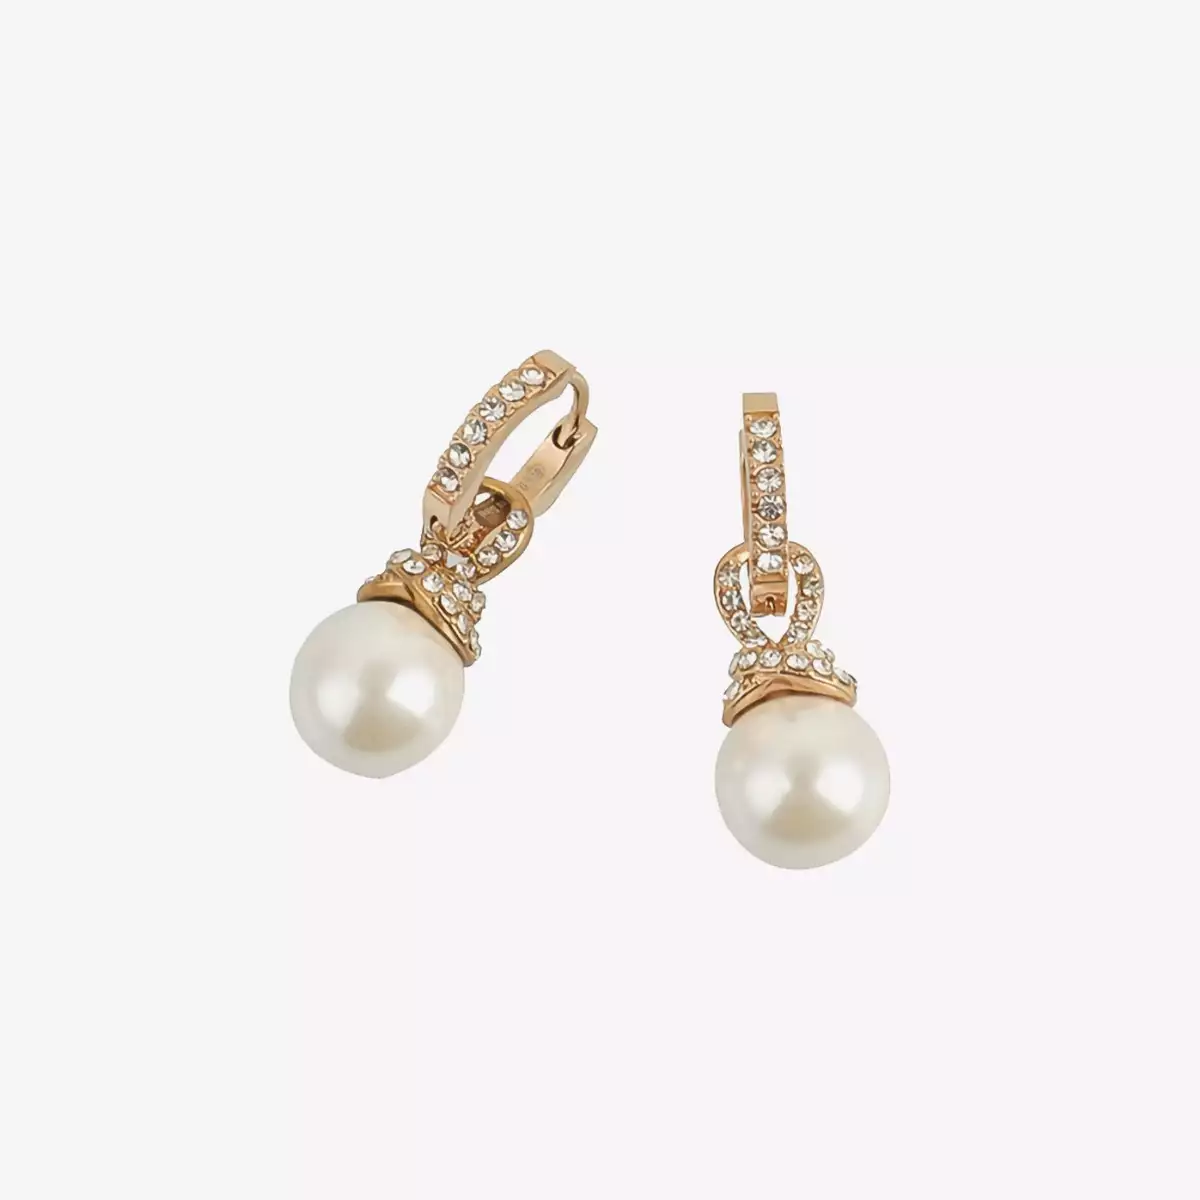 Boucles d'oreilles Femme Brillants Perles PANNA